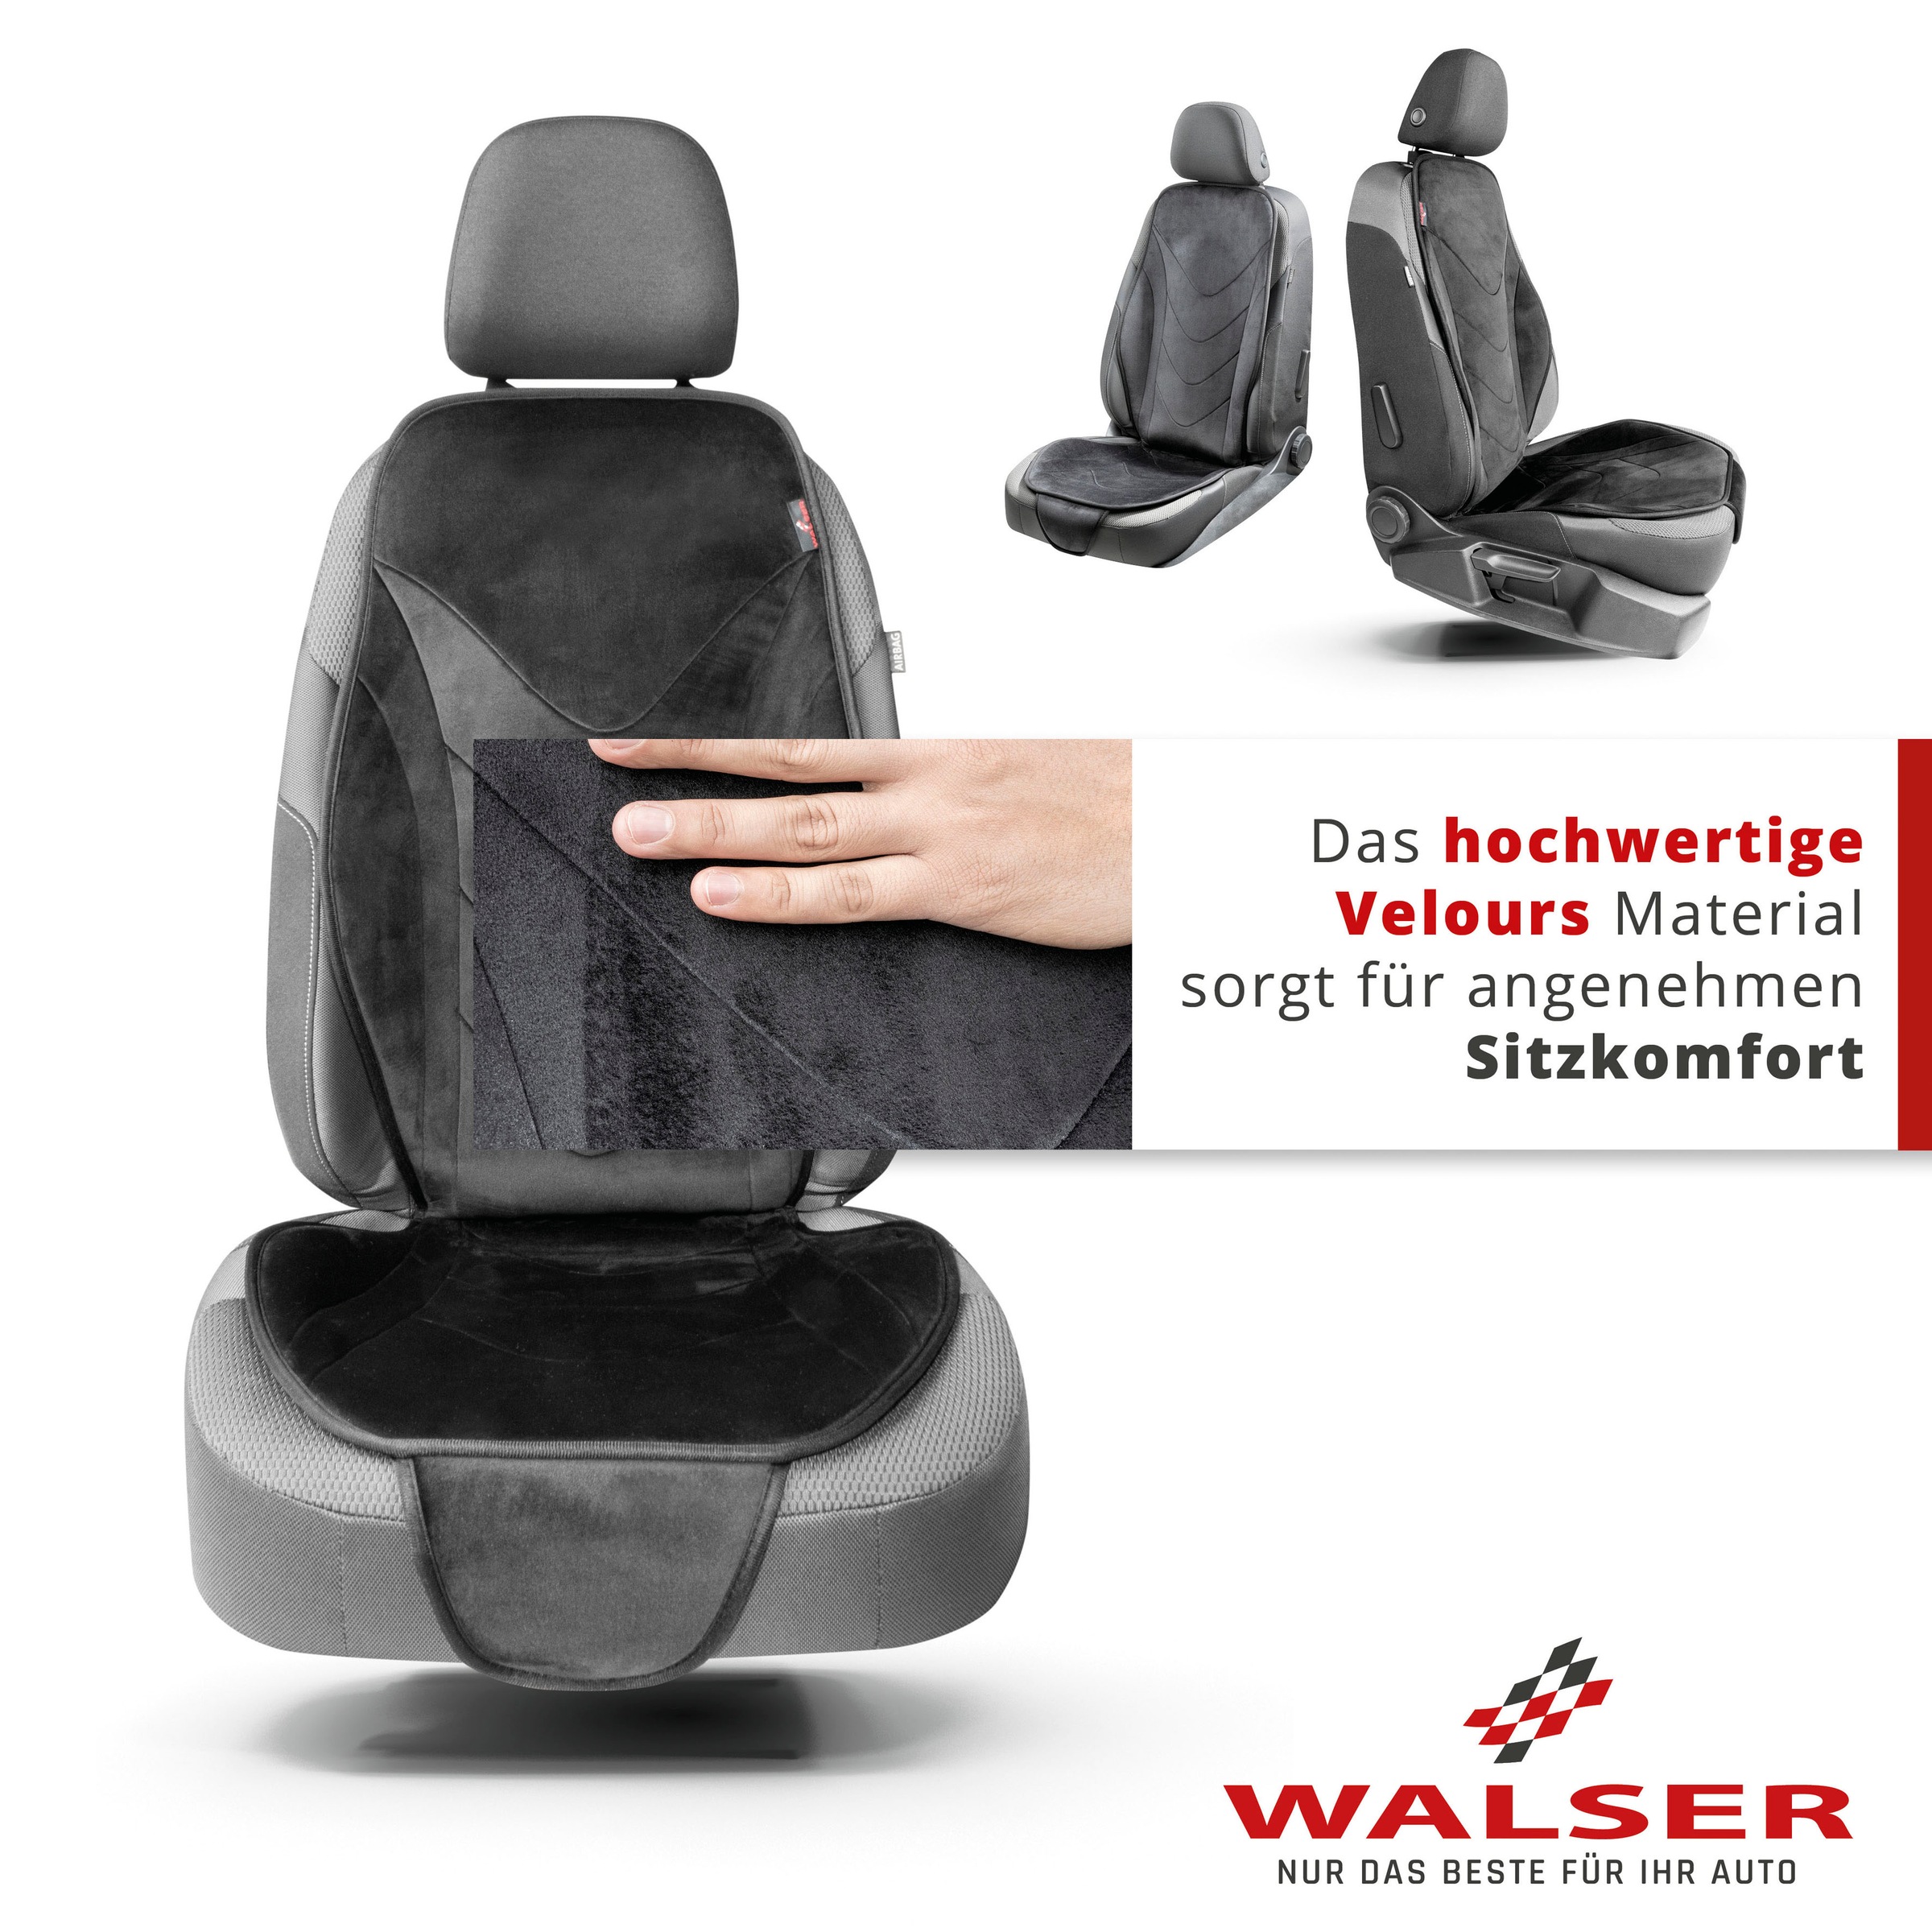 WALSER - nur das Beste für Ihr Auto